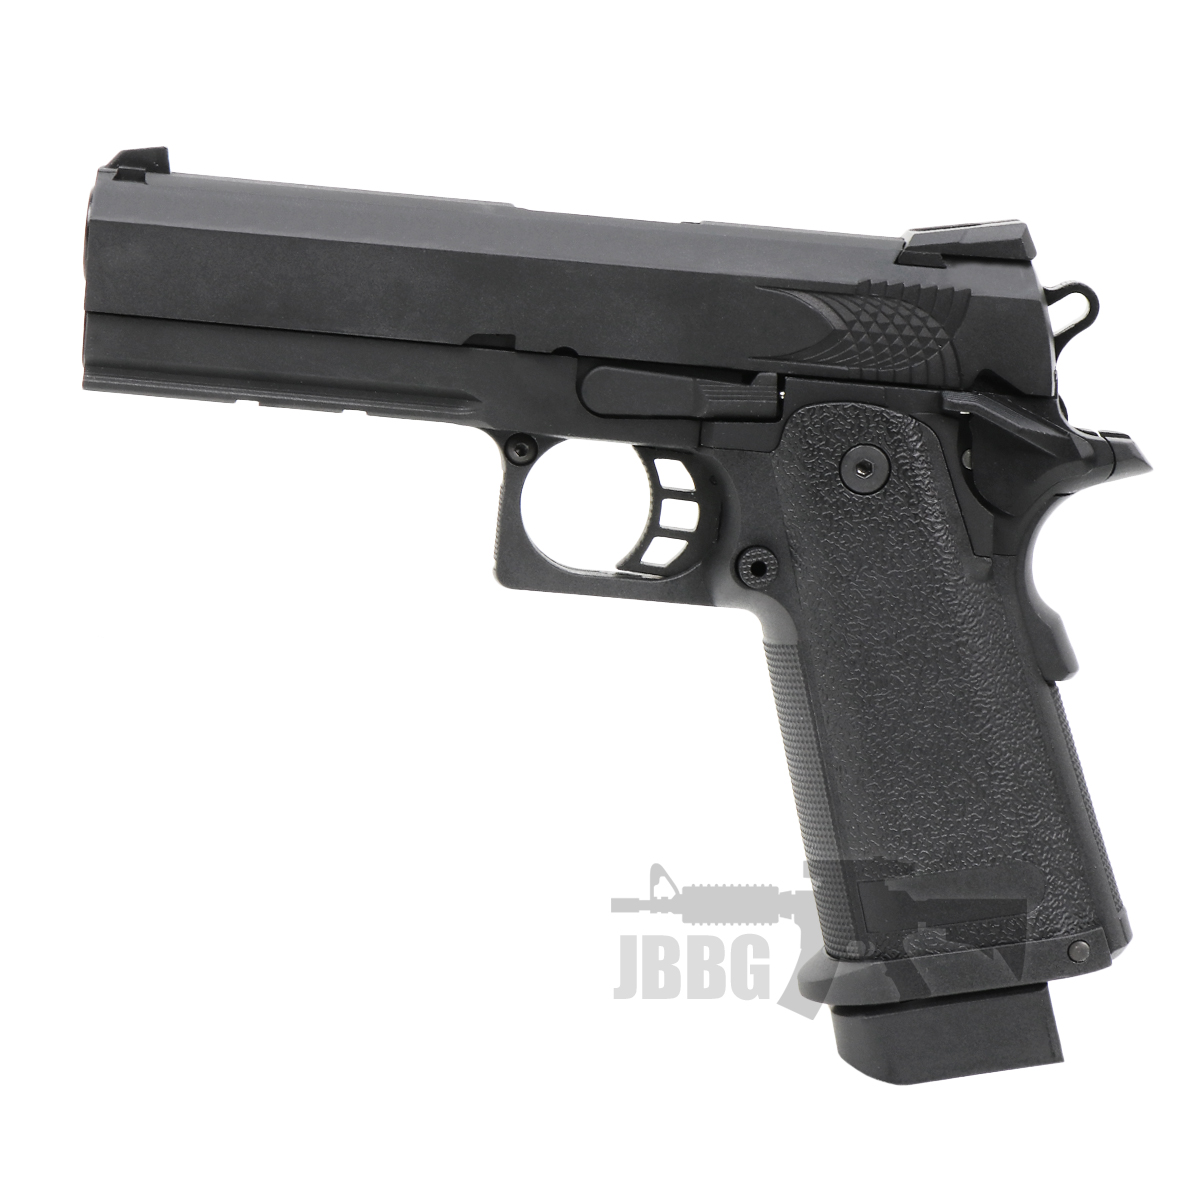 RS Hi Capa 4 3 GBB Airsoft Pistol SRC black 1